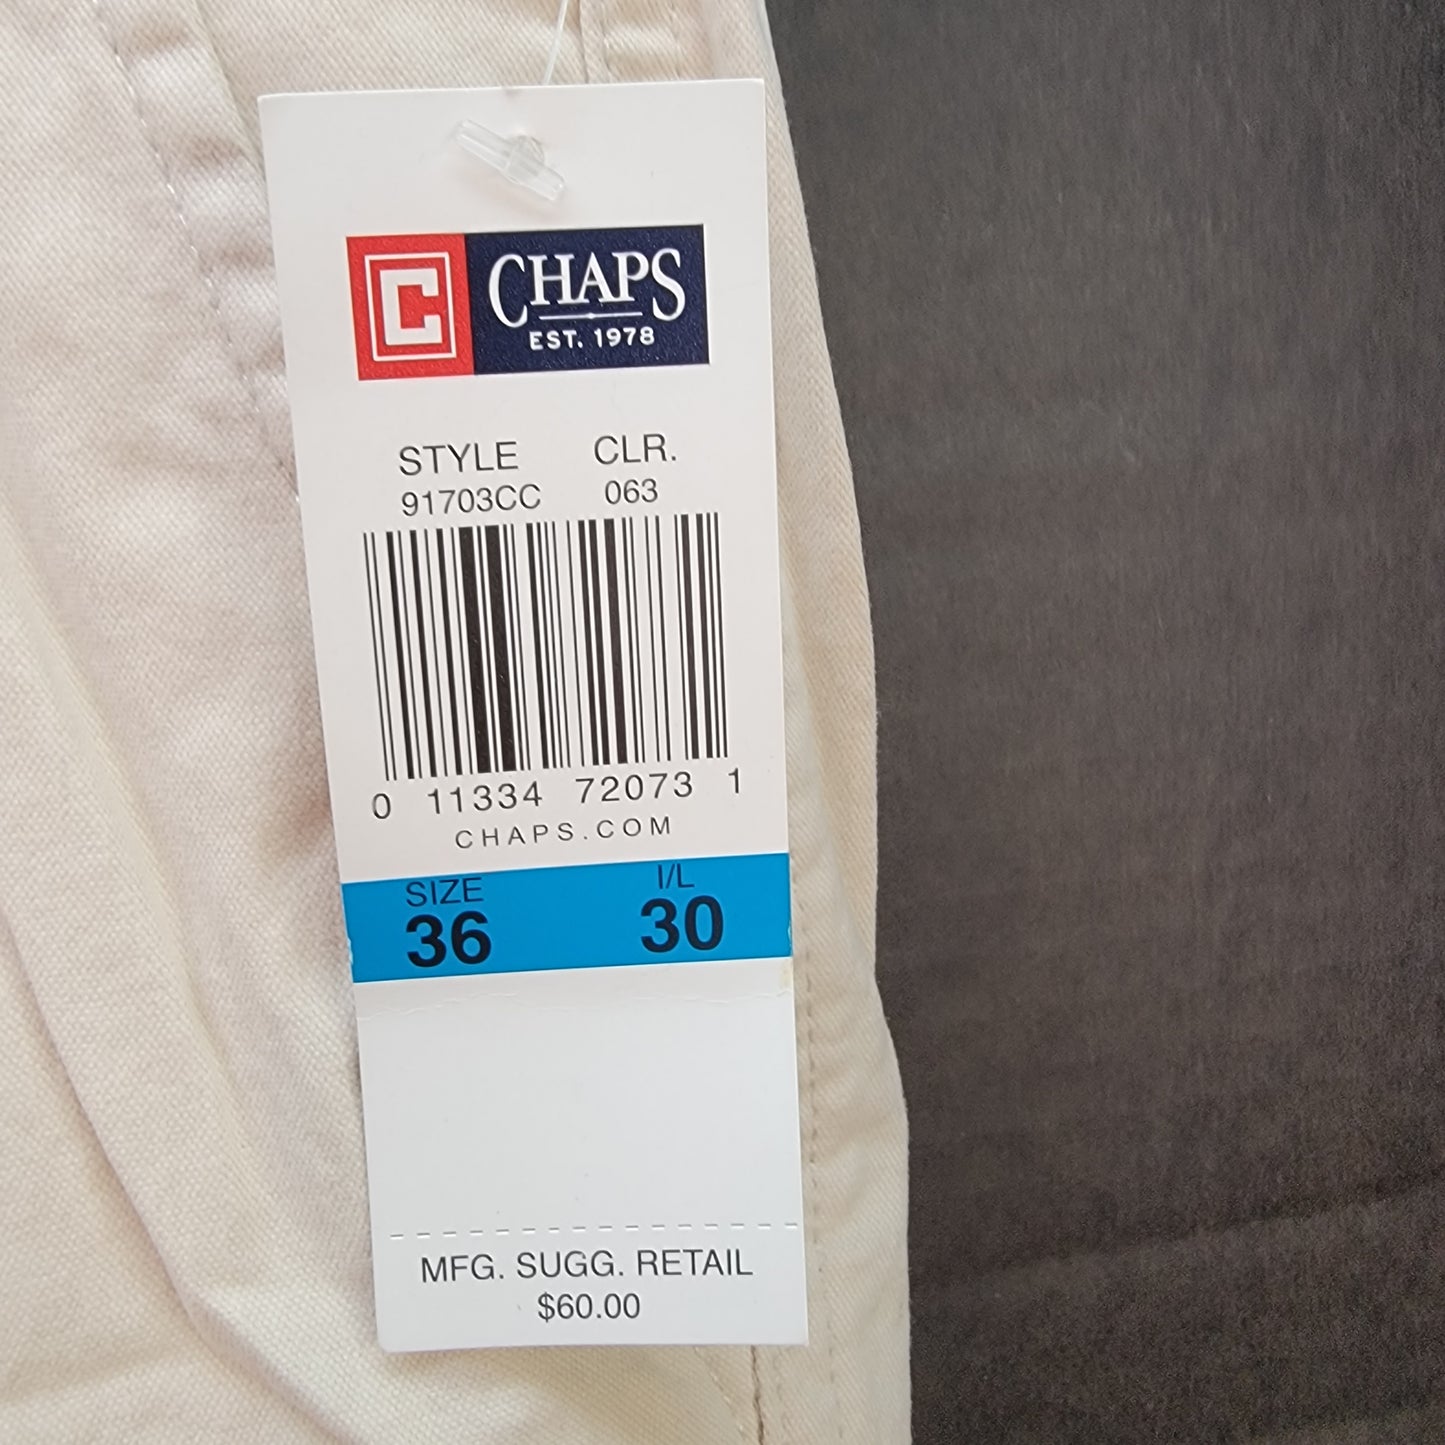 Chaps Men's Cargo Pants Color Khaki Size 36X30 Retail $60.00